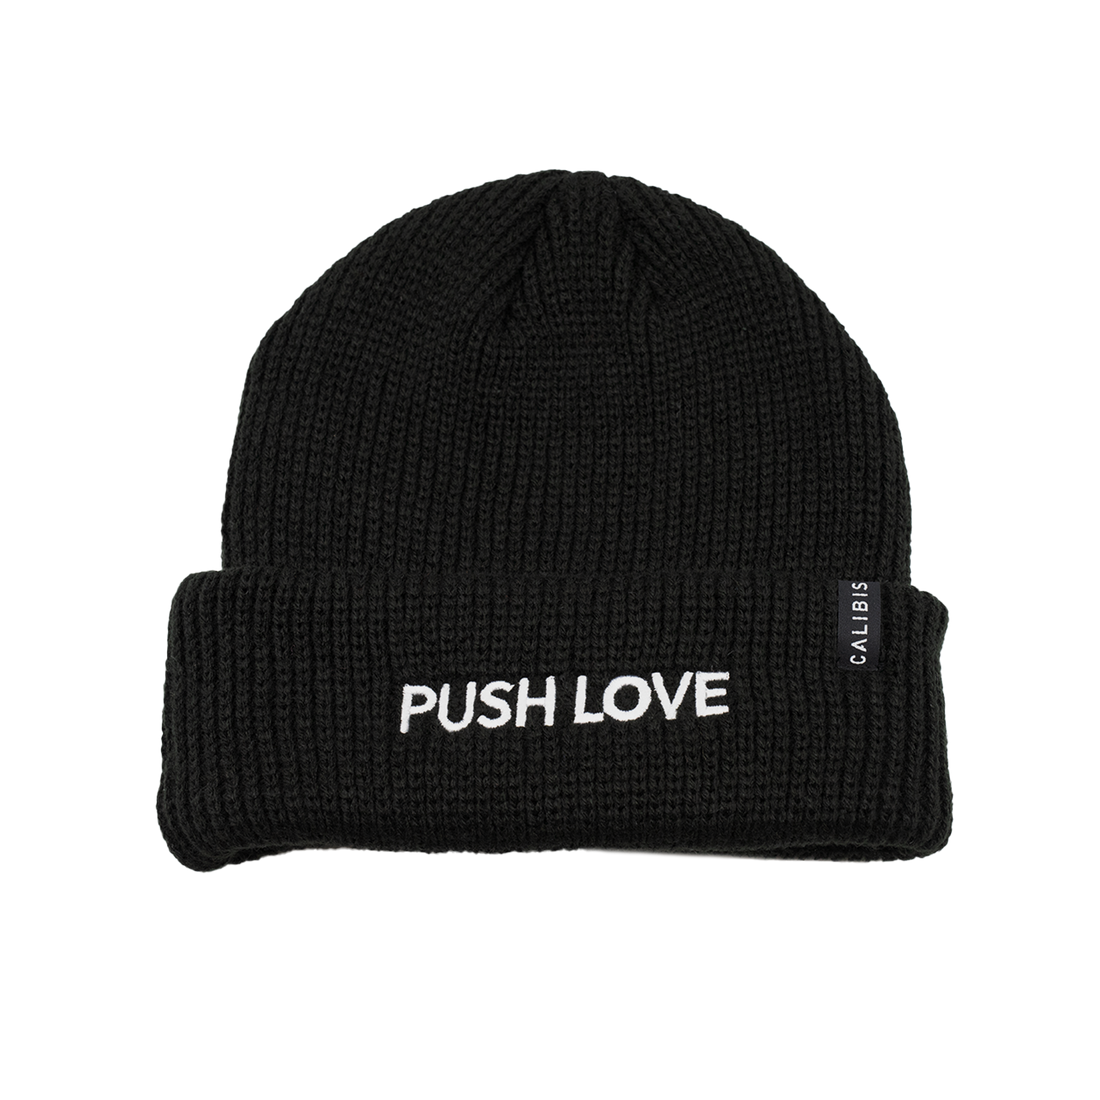 Push Love Cuff Beanie